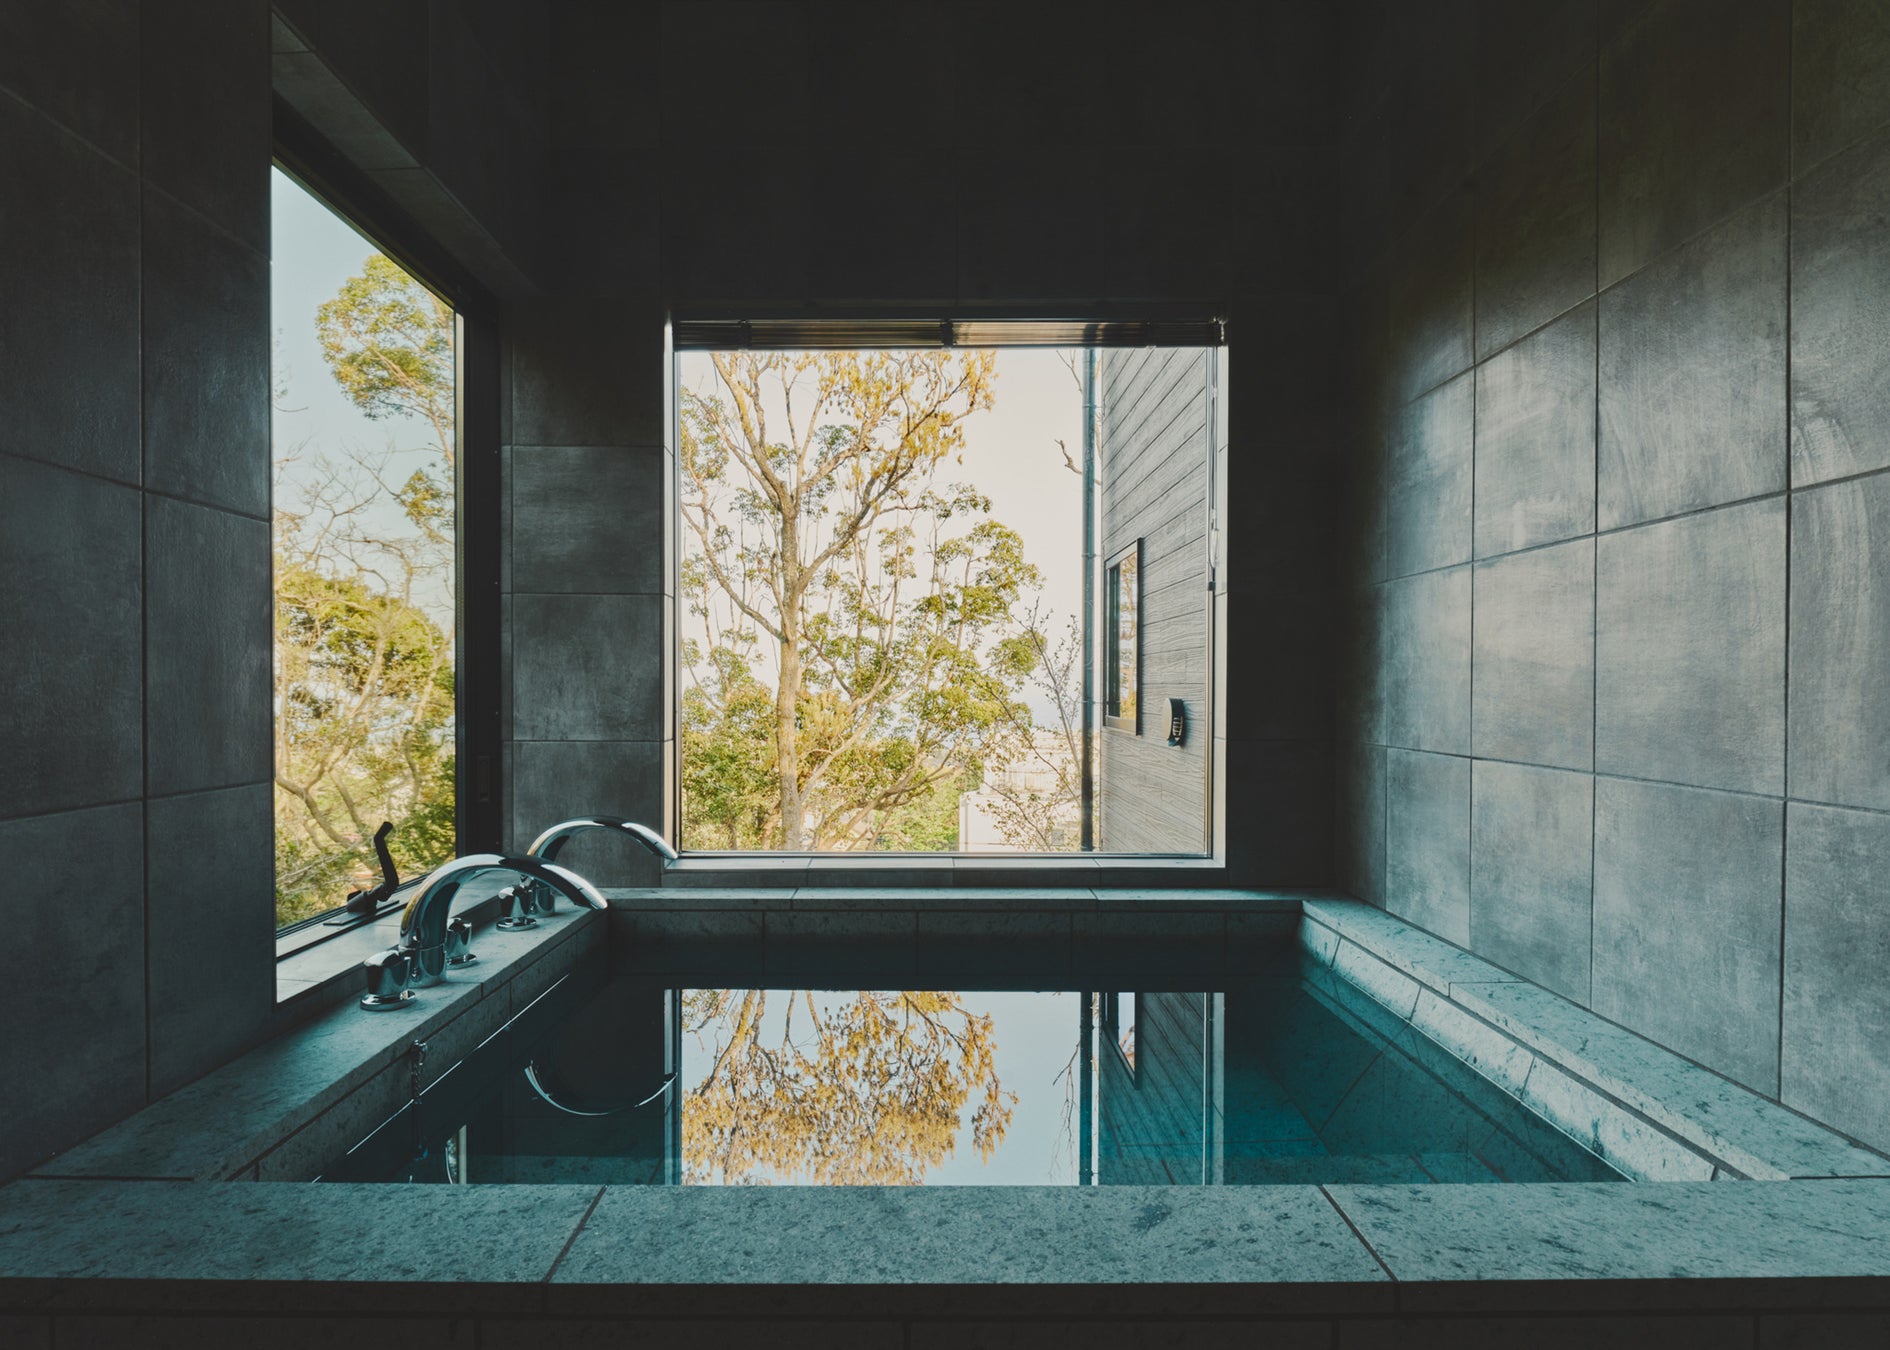 優れた手触りの十和田石を使用した浴槽と、効能豊かな東伊豆の源泉掛け流しの天然温泉により、日々の疲れを癒していただけます。